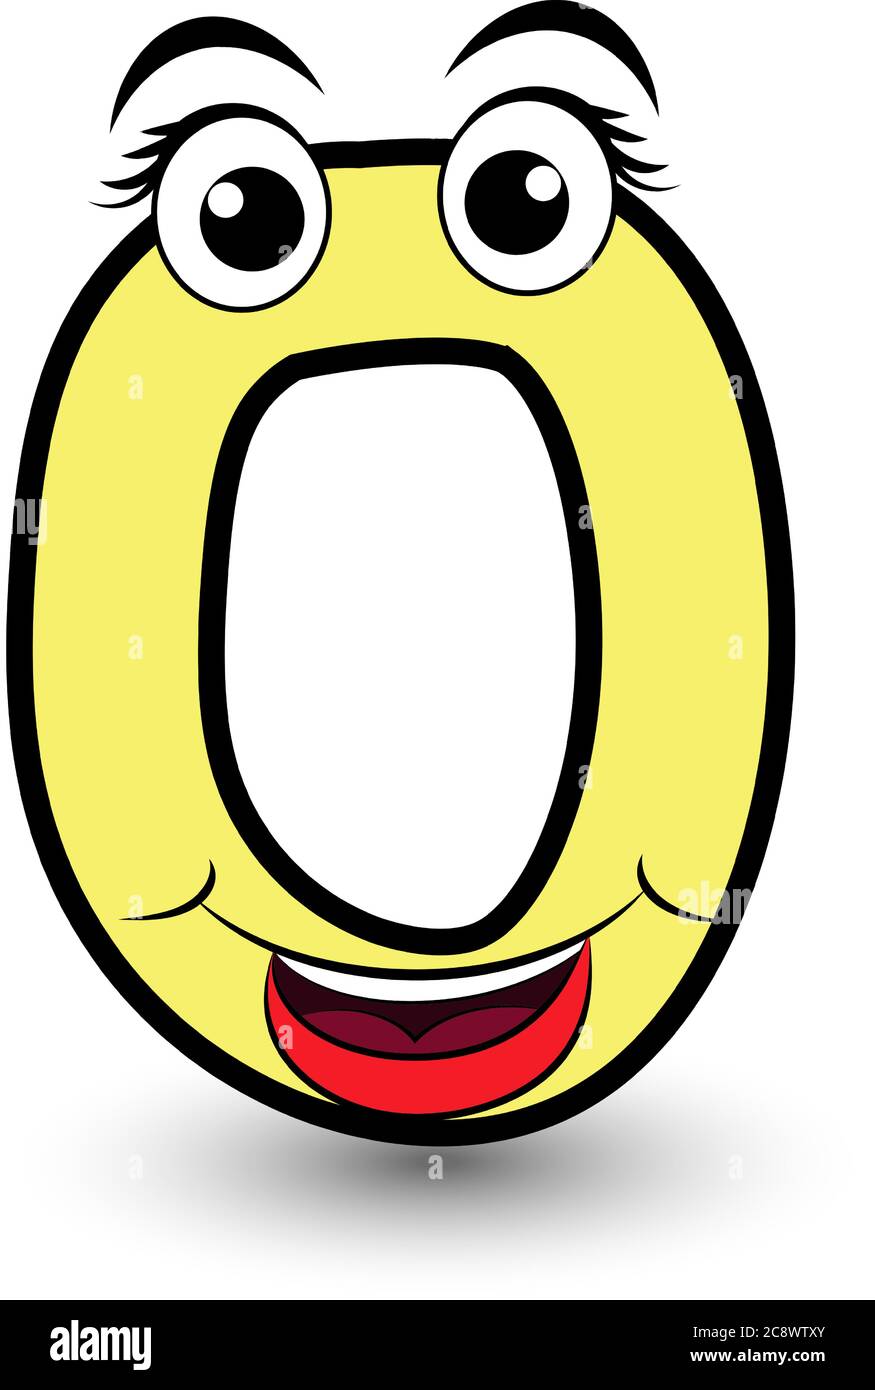 Drôle dessin main dessin animé stylisé police coloré lettre O avec visage souriant vecteur alphabet illustration isolée sur blanc. Bon pour les enfants apprenant activi Illustration de Vecteur